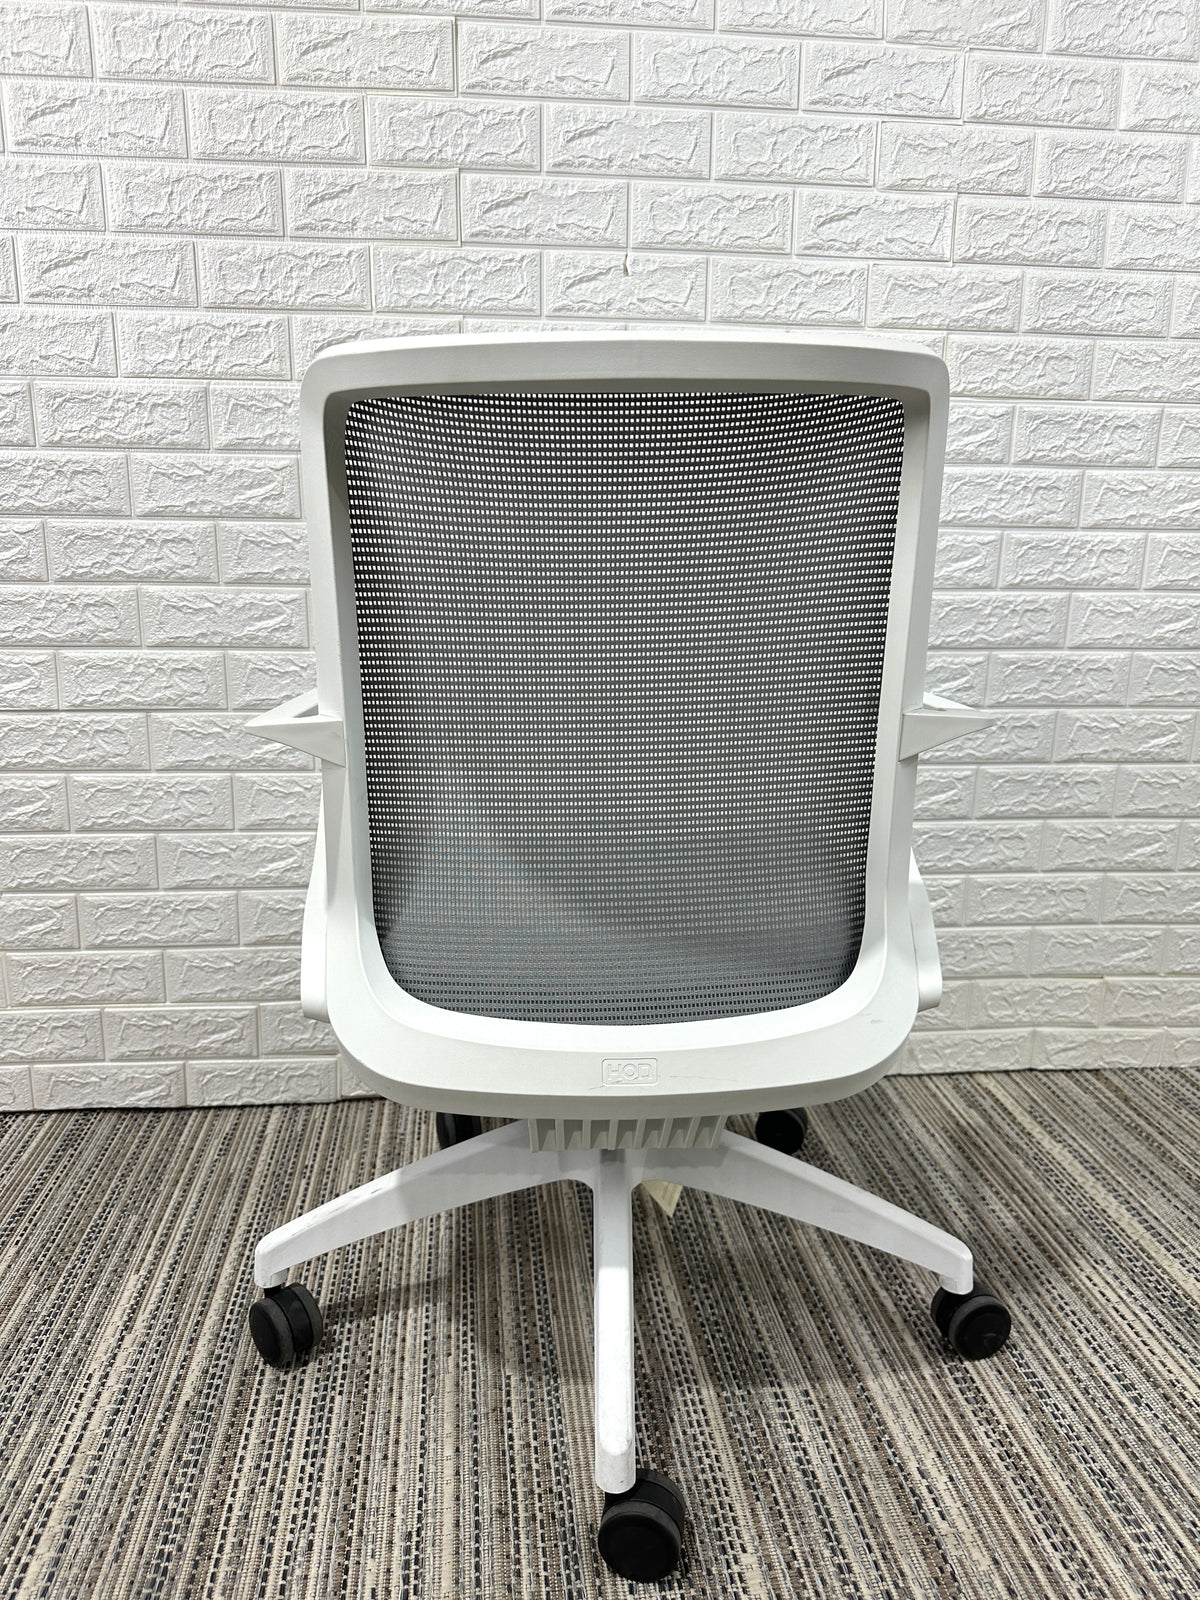 CLOSEOUT Hon Cliq Chair - Duckys Office Furniture